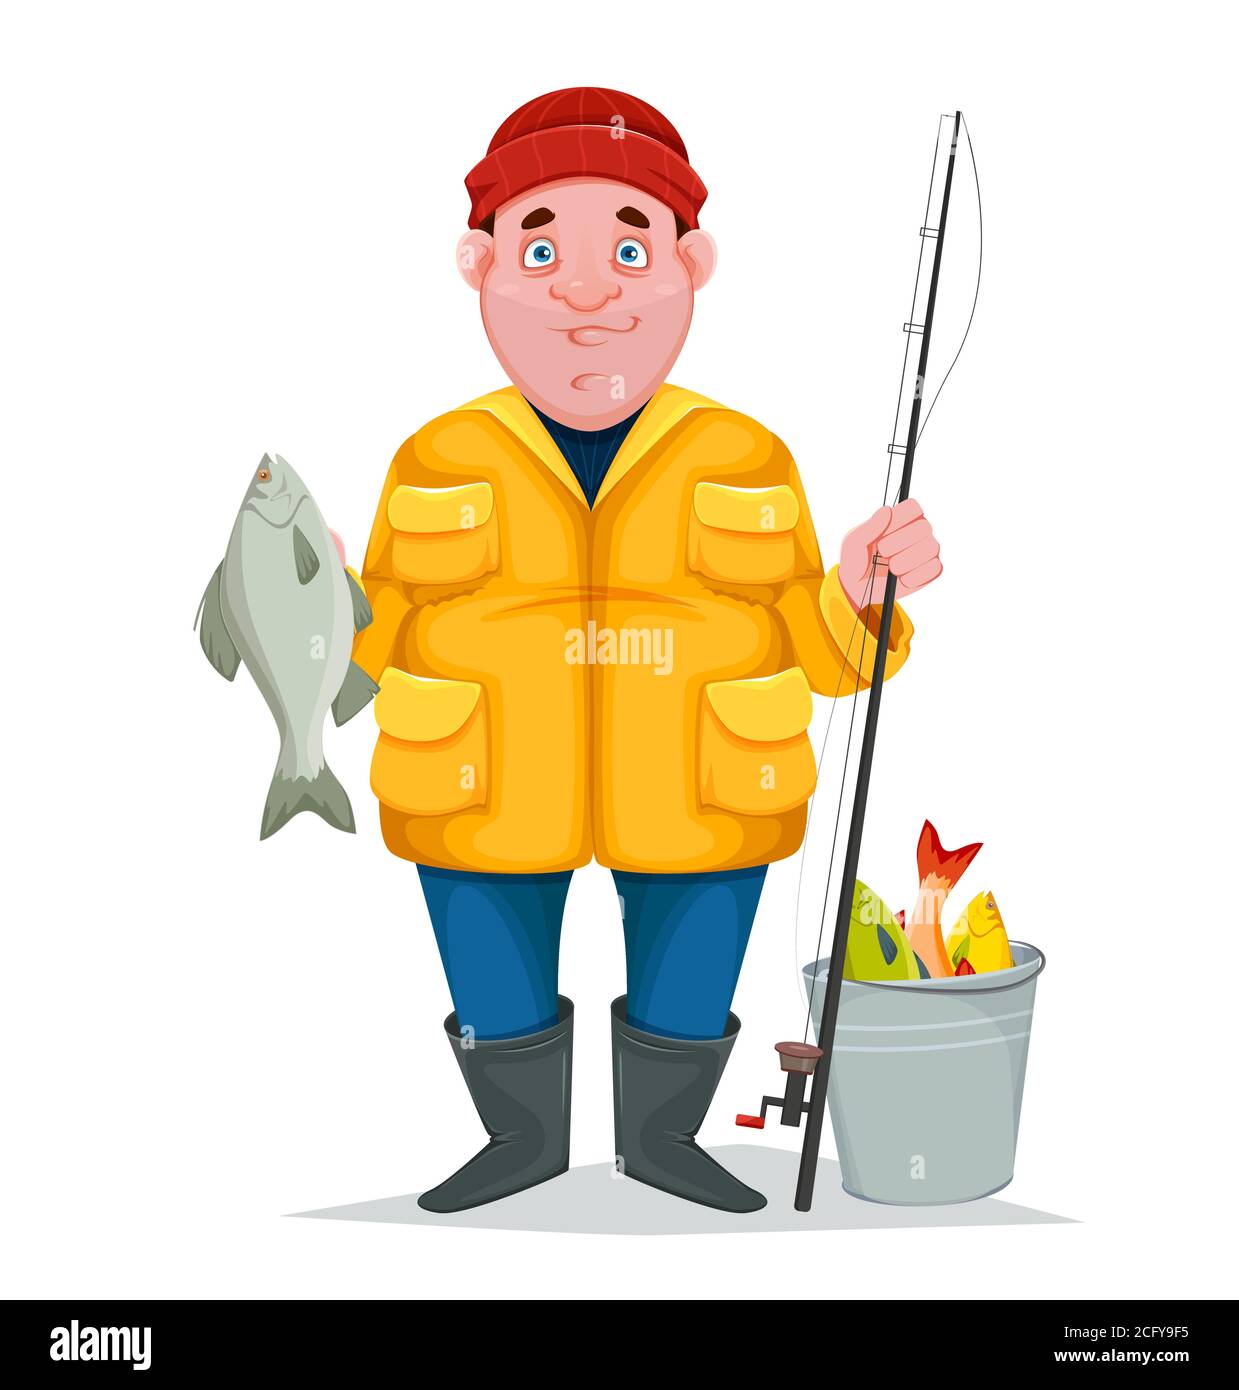 Fish illustration fishing fisherman rod hi-res stock photography